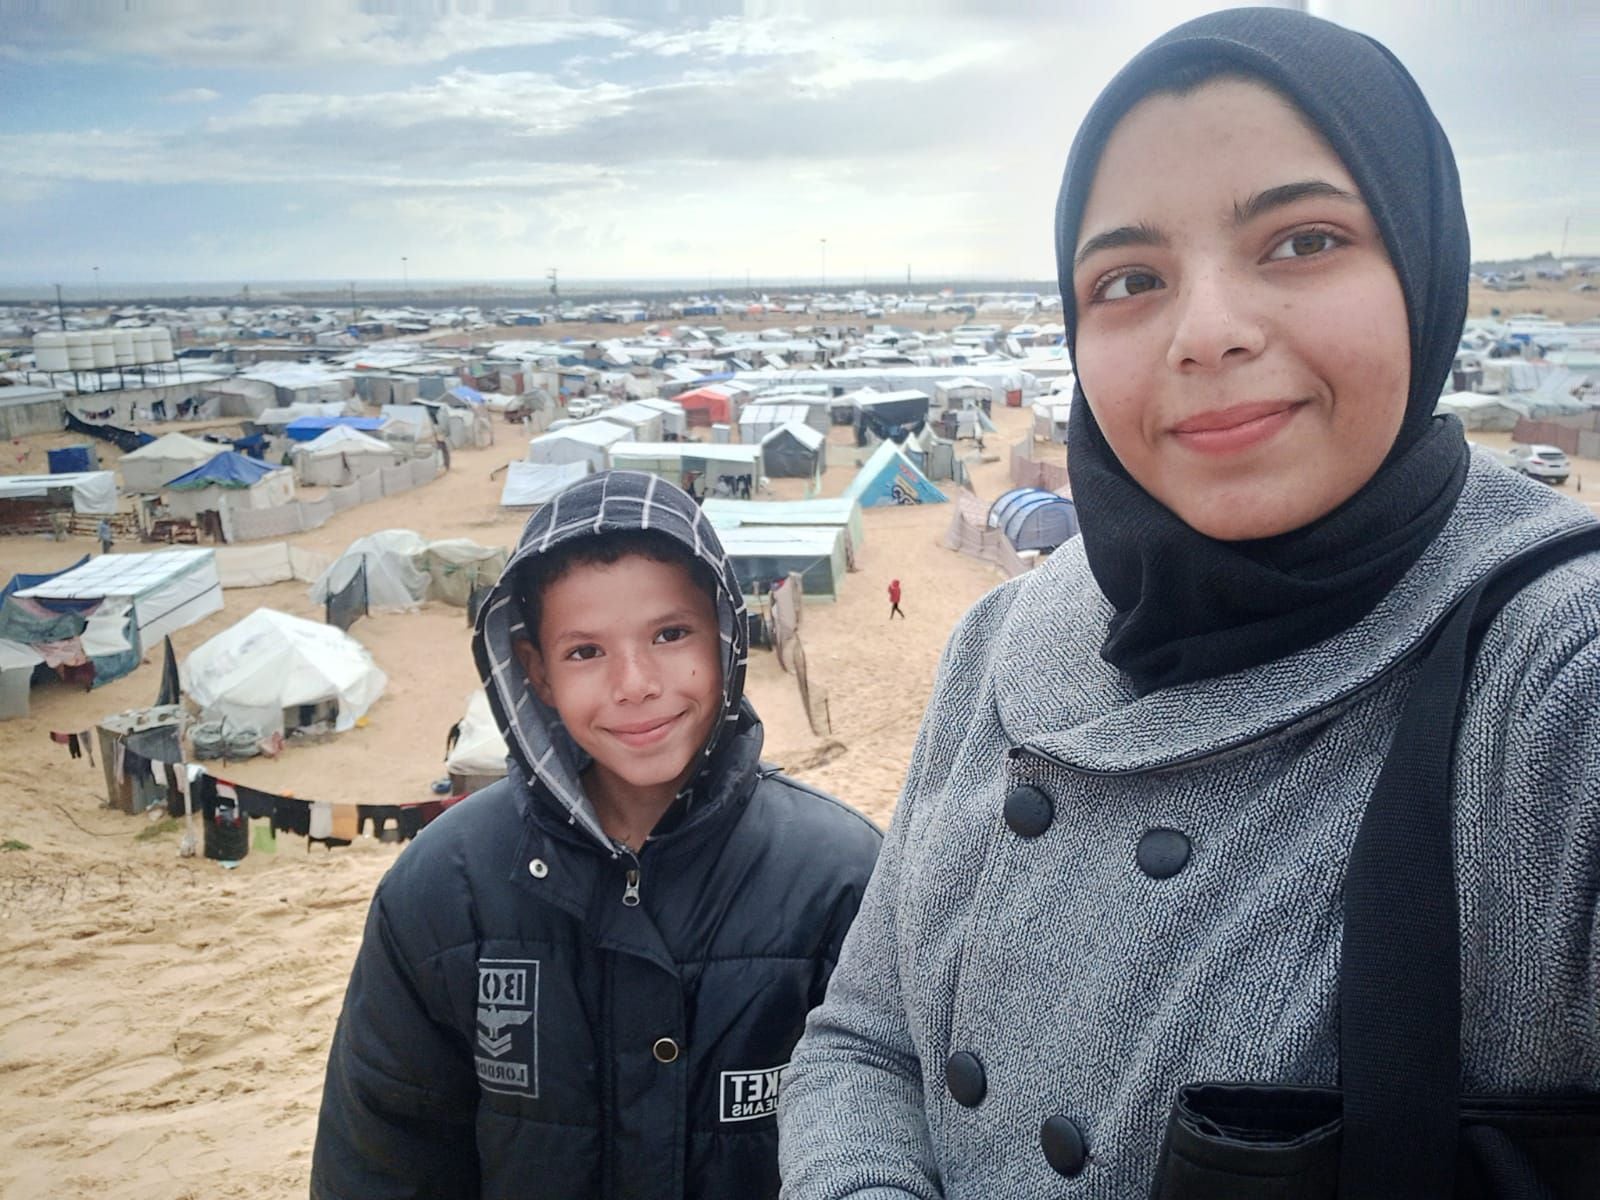 pastillas para cortar la regla, partos en tiendas de campaña y la proeza de encontrar un baño: así viven las gazatíes desplazadas